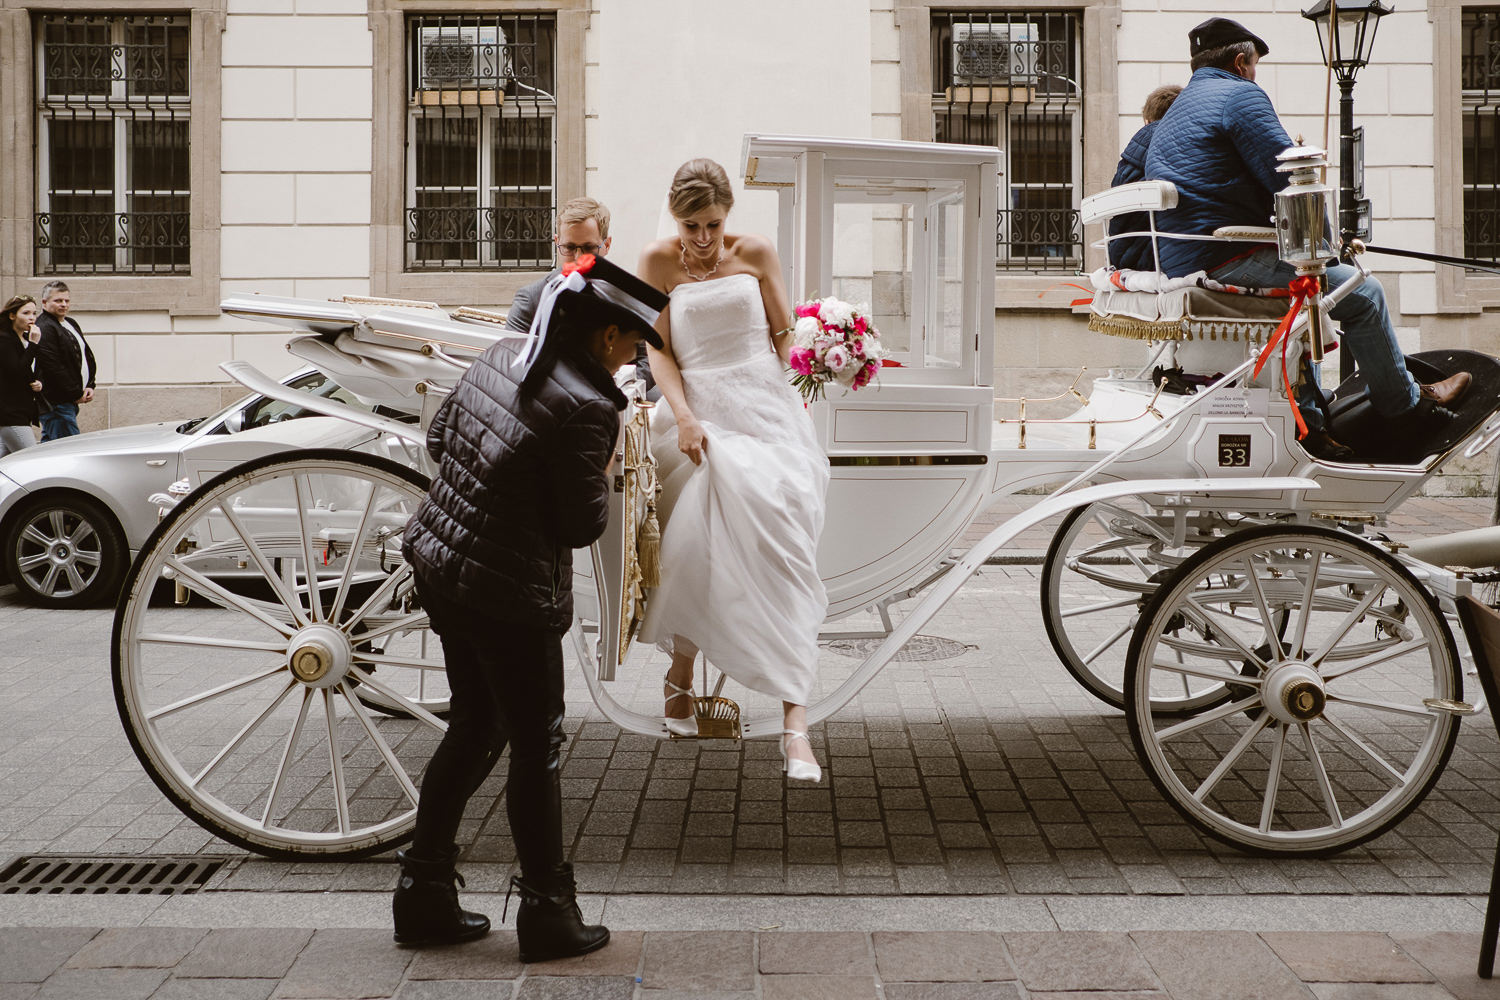 wesele w hotelu starym, hotel stary, rynek krakow, wesele w krakowie, slub w krakowie, eleganckie wesele, eleganckie wesele w krakowie, fotograf slubny, fotografia slubna